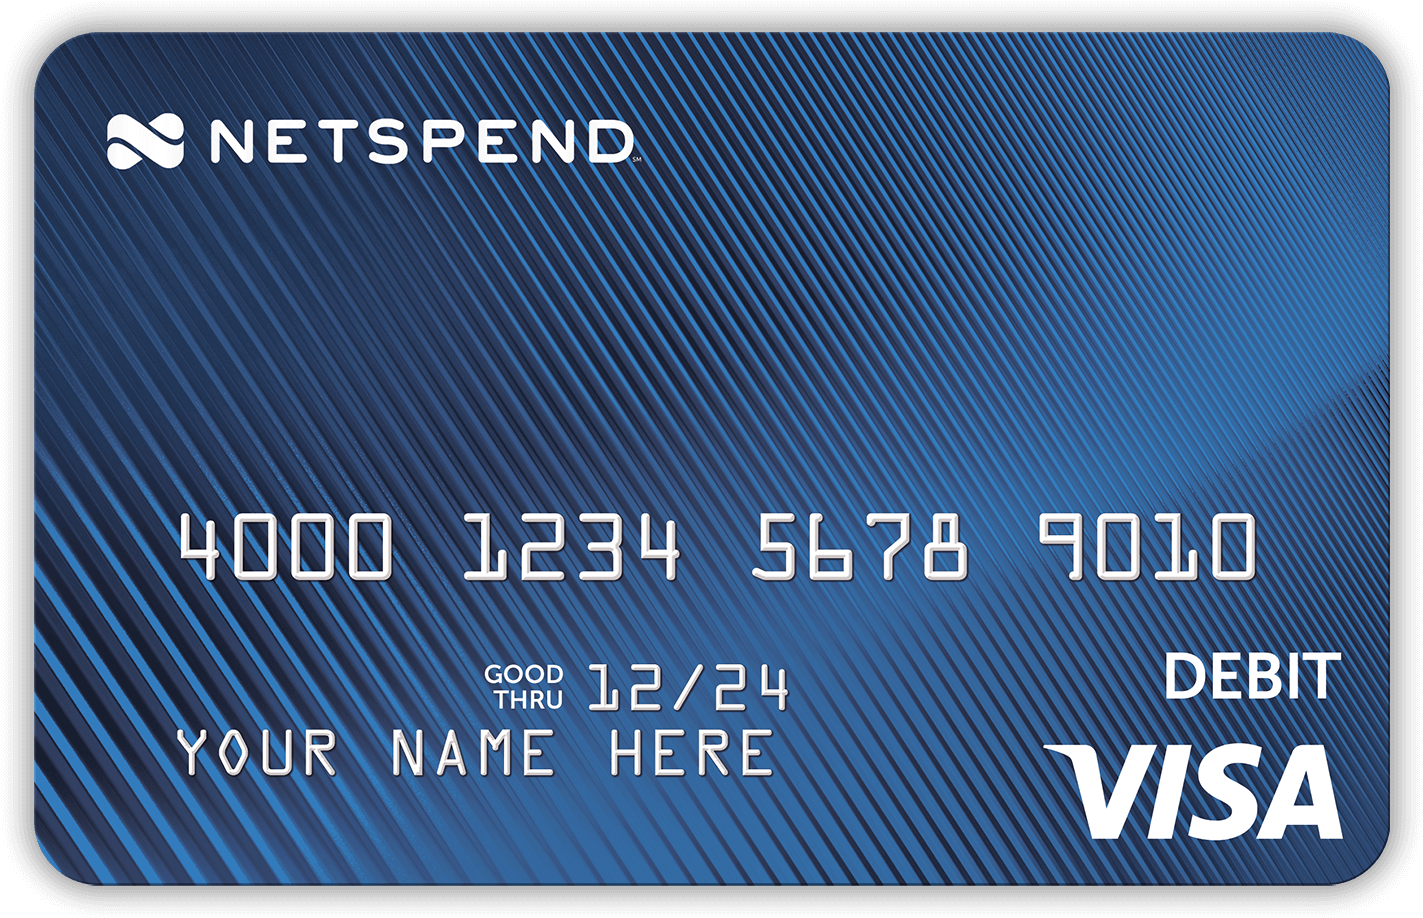 Netspend Visa Debit Card Mockup PNG image